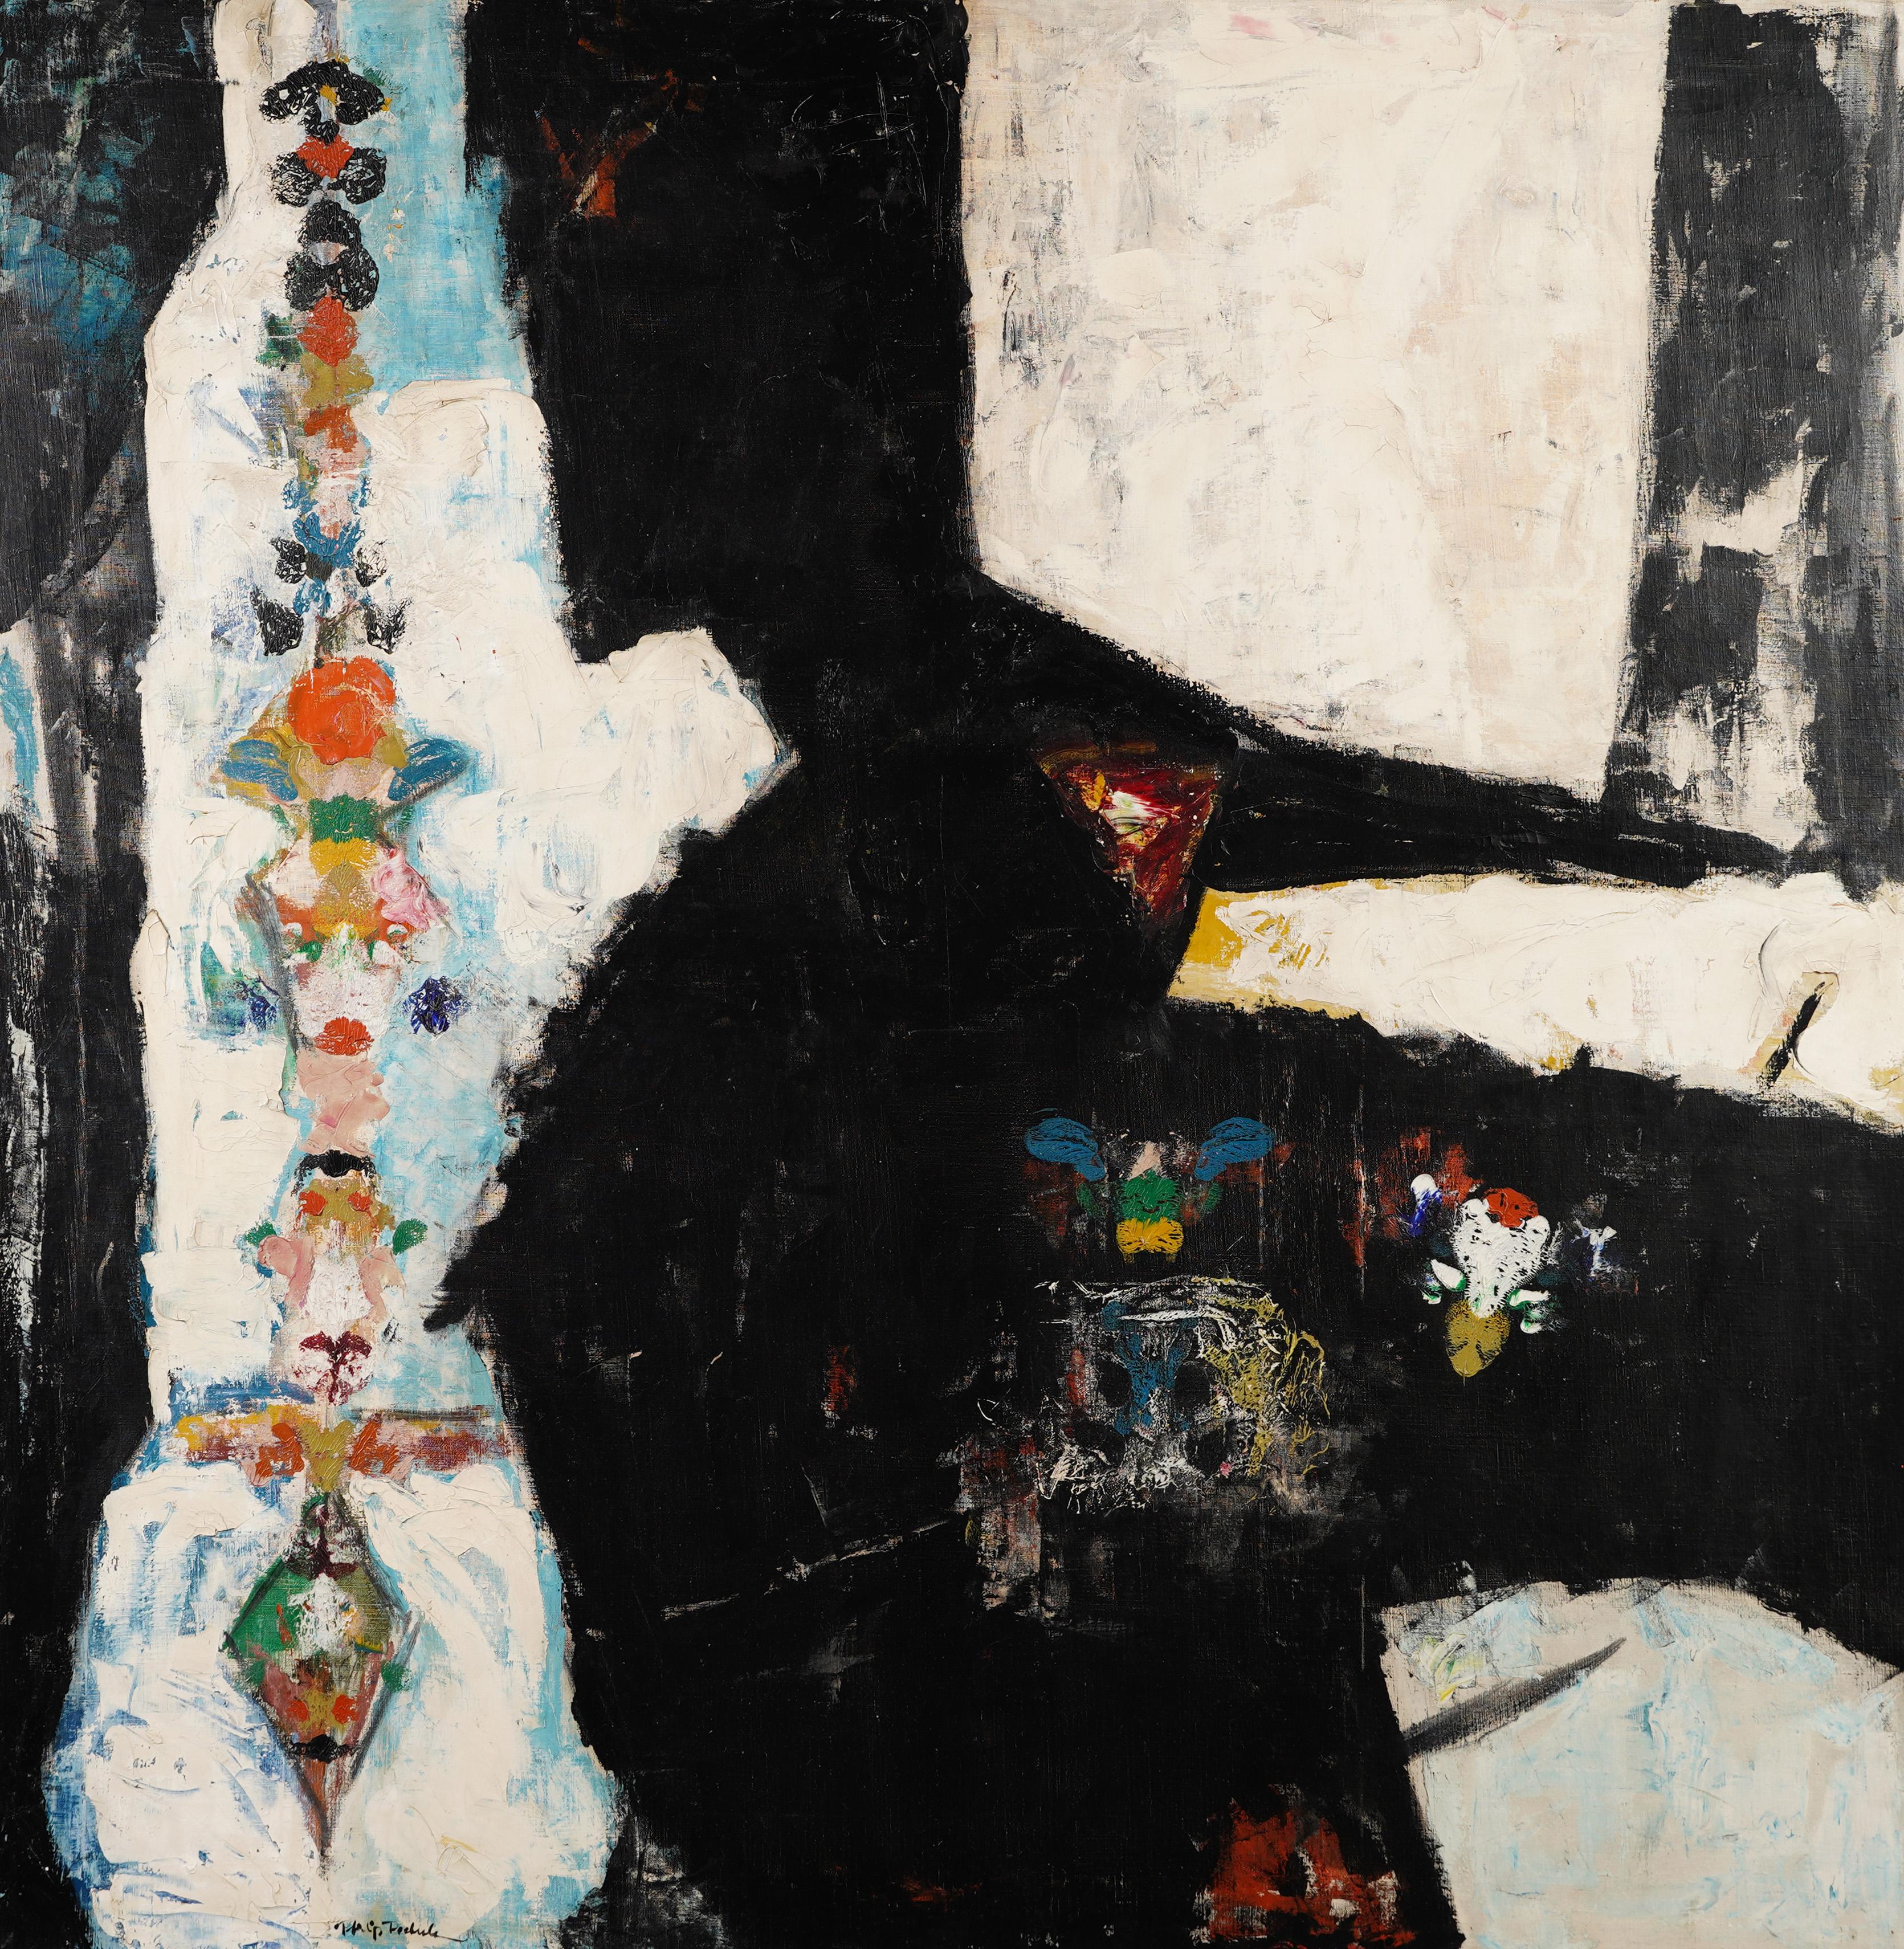  Grande peinture à l'huile moderne abstraite monumentale encadrée et signée de style expressionniste - Noir Abstract Painting par Unknown